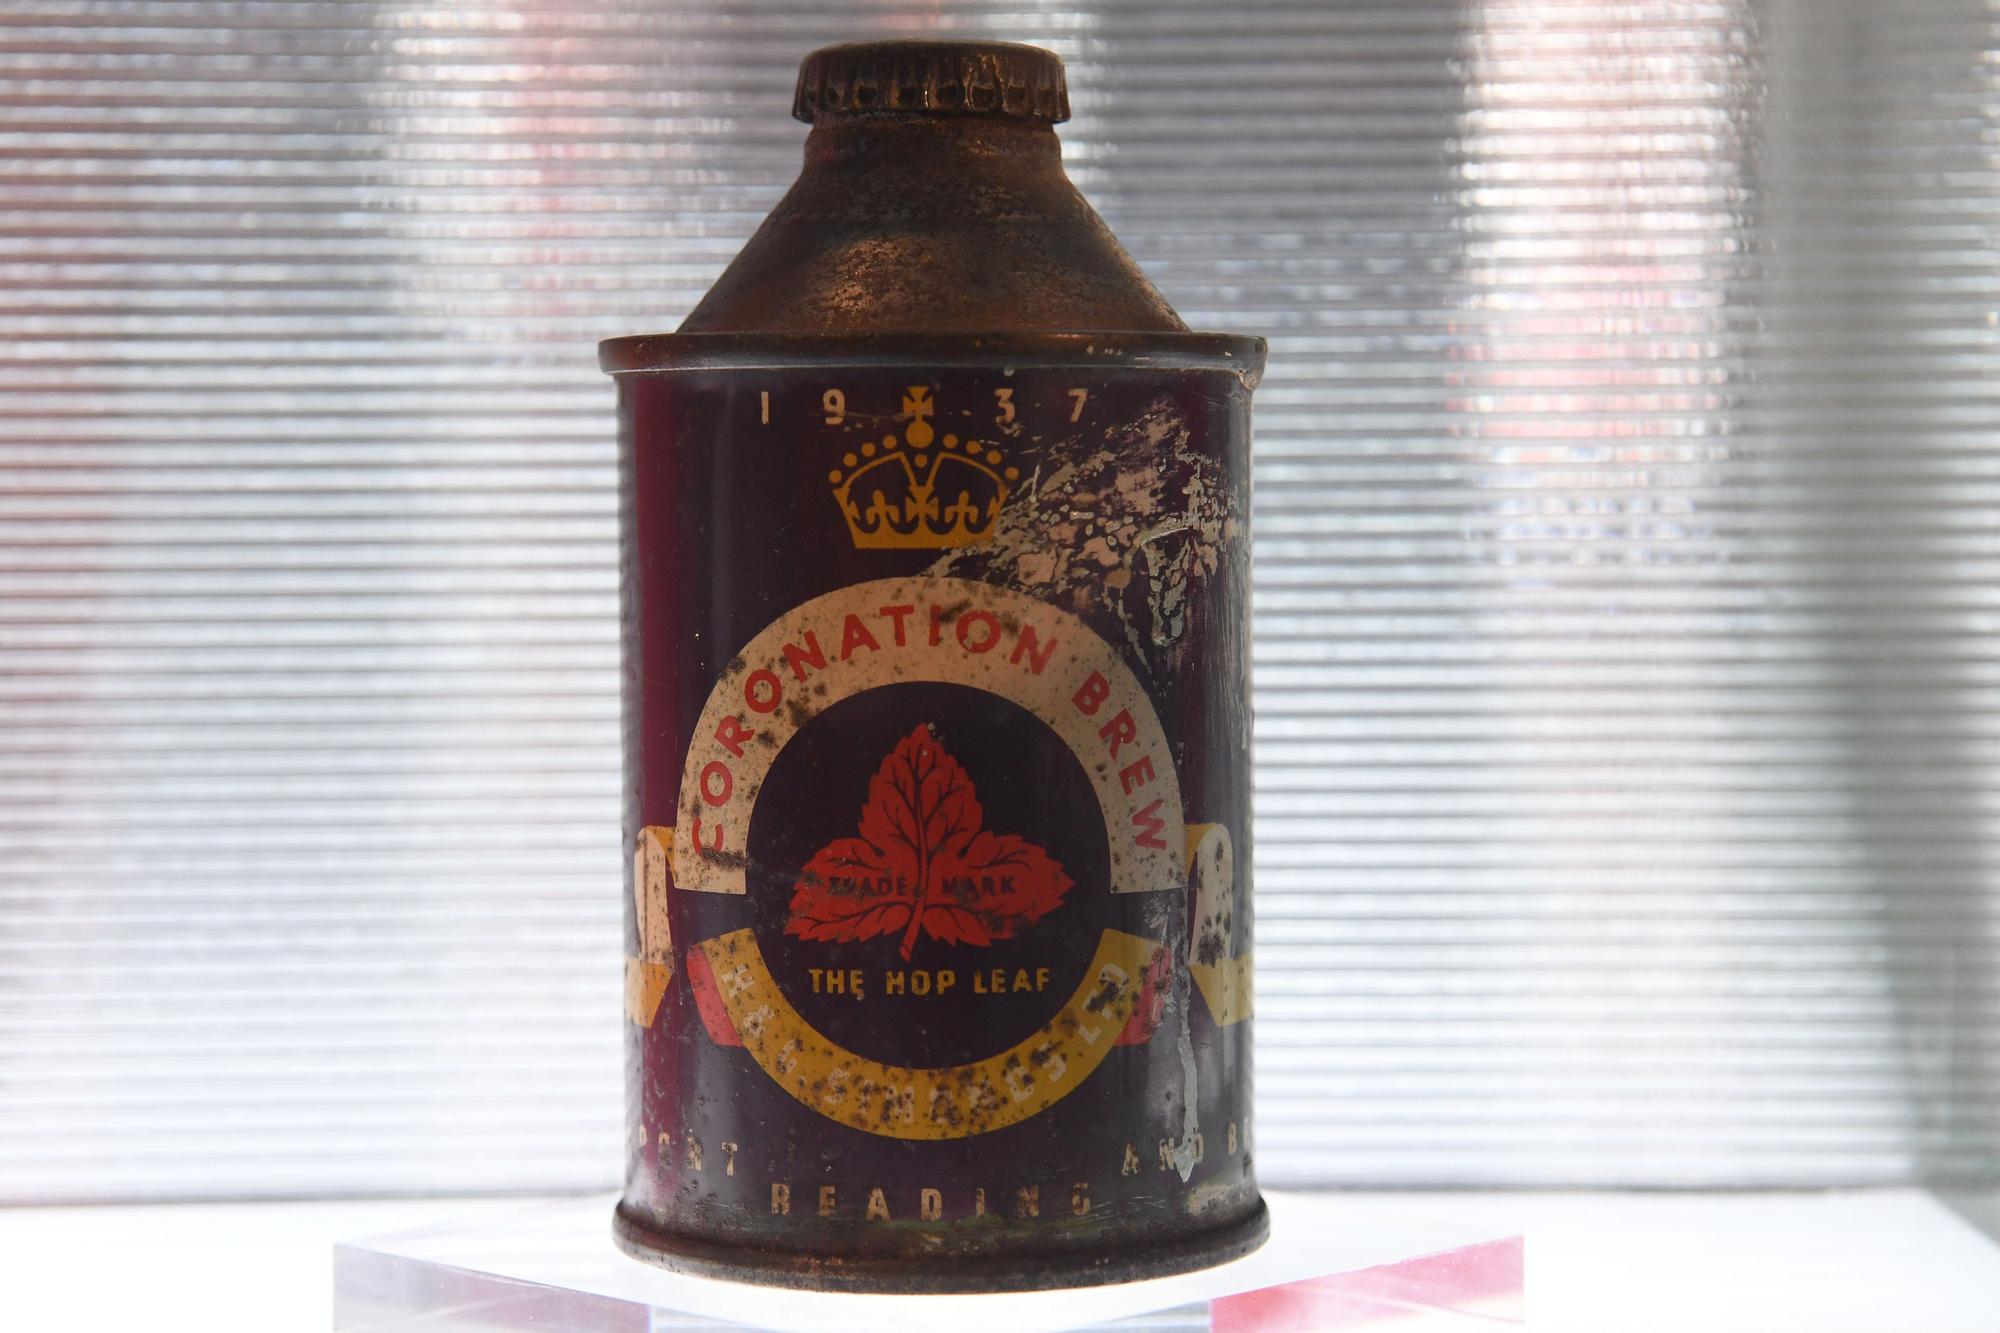 Lata de cerveza conmemorativa de la coronación del rey Jorge VI en Reino Unido.